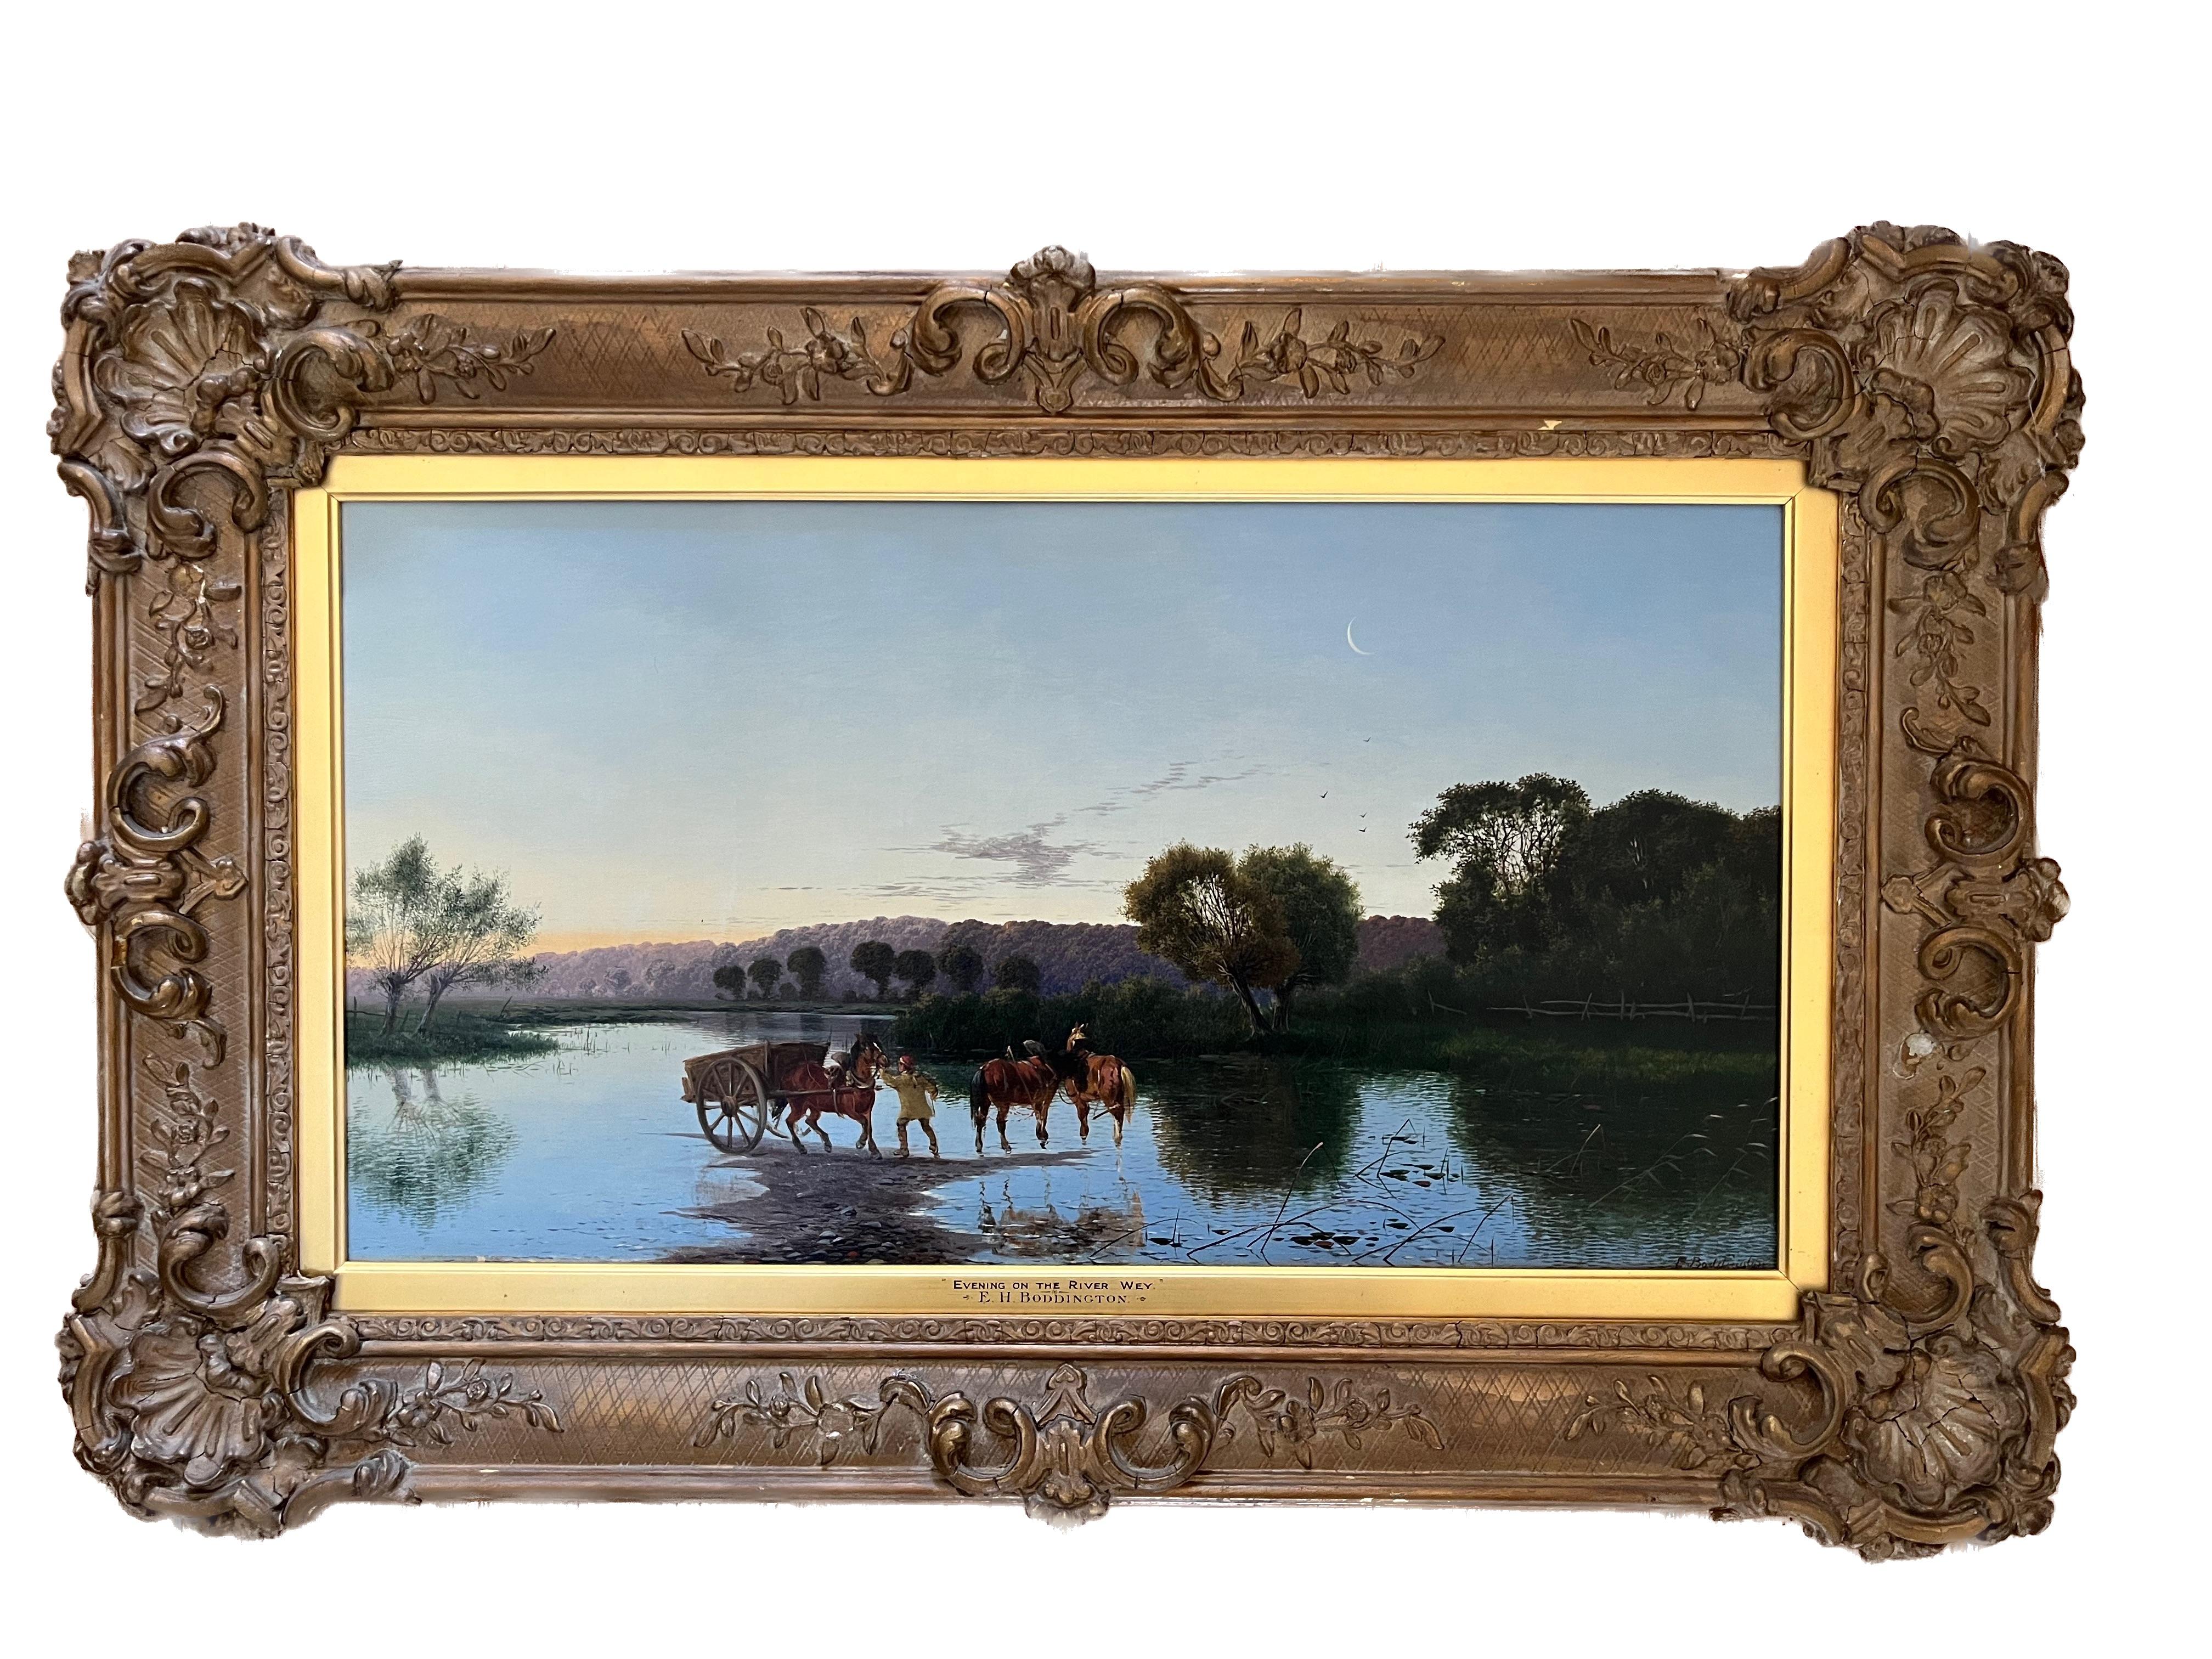 Peinture de paysage victorienne de la Tamise avec des chevaux s'abreuvant